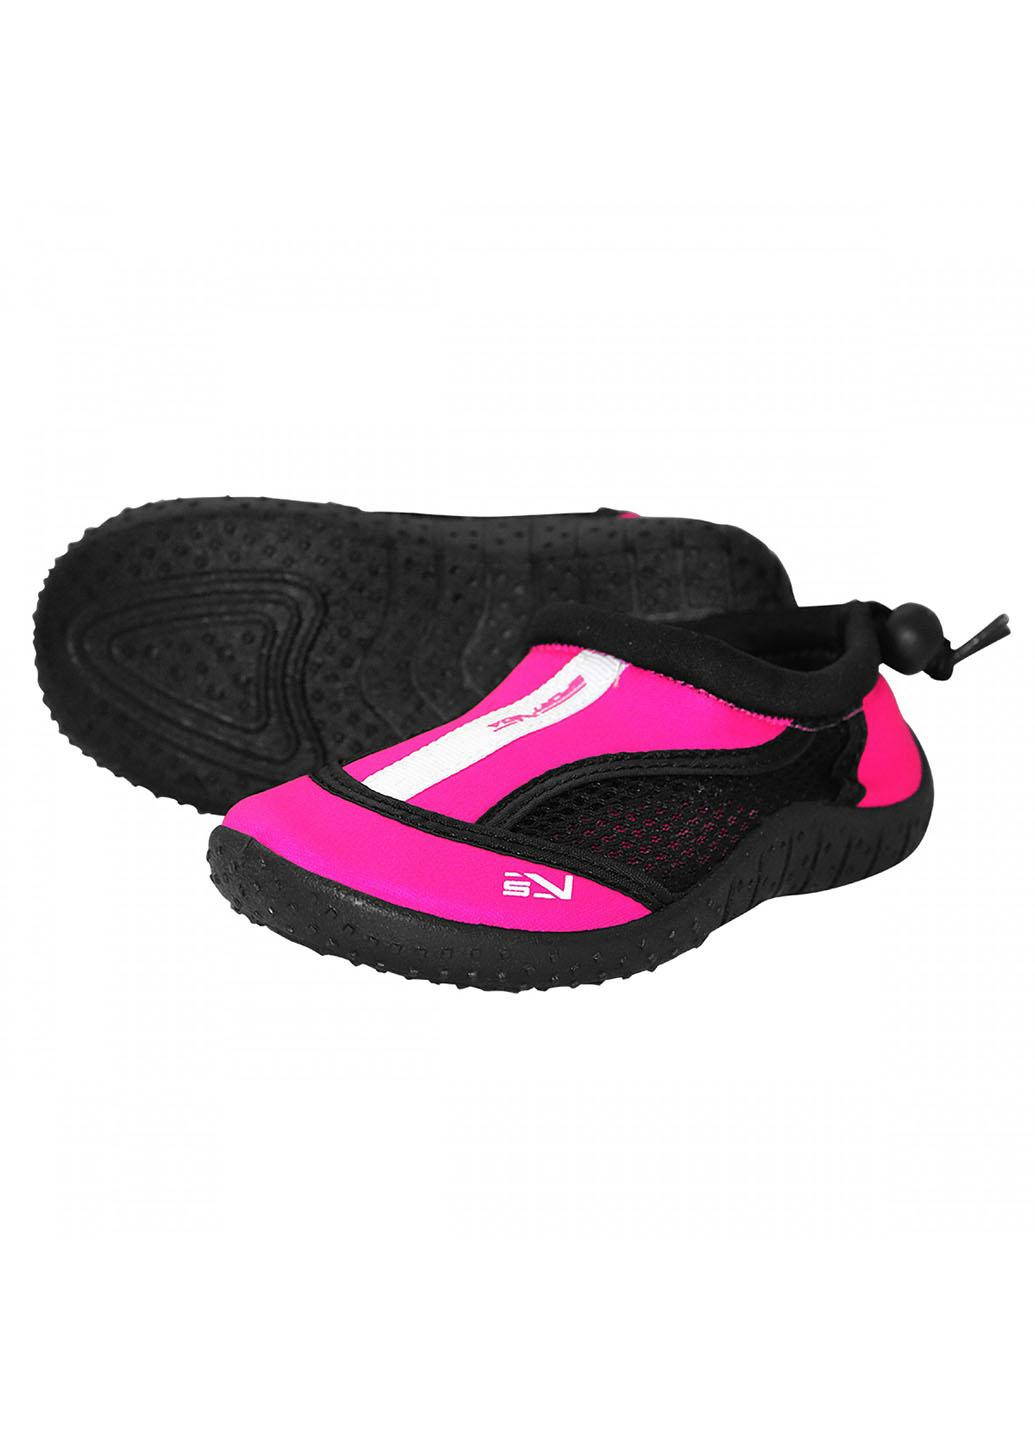 Обувь для пляжа и кораллов (аквашузы) SV-GY0001-R29 Size 29 Black/Pink SportVida (258486783)